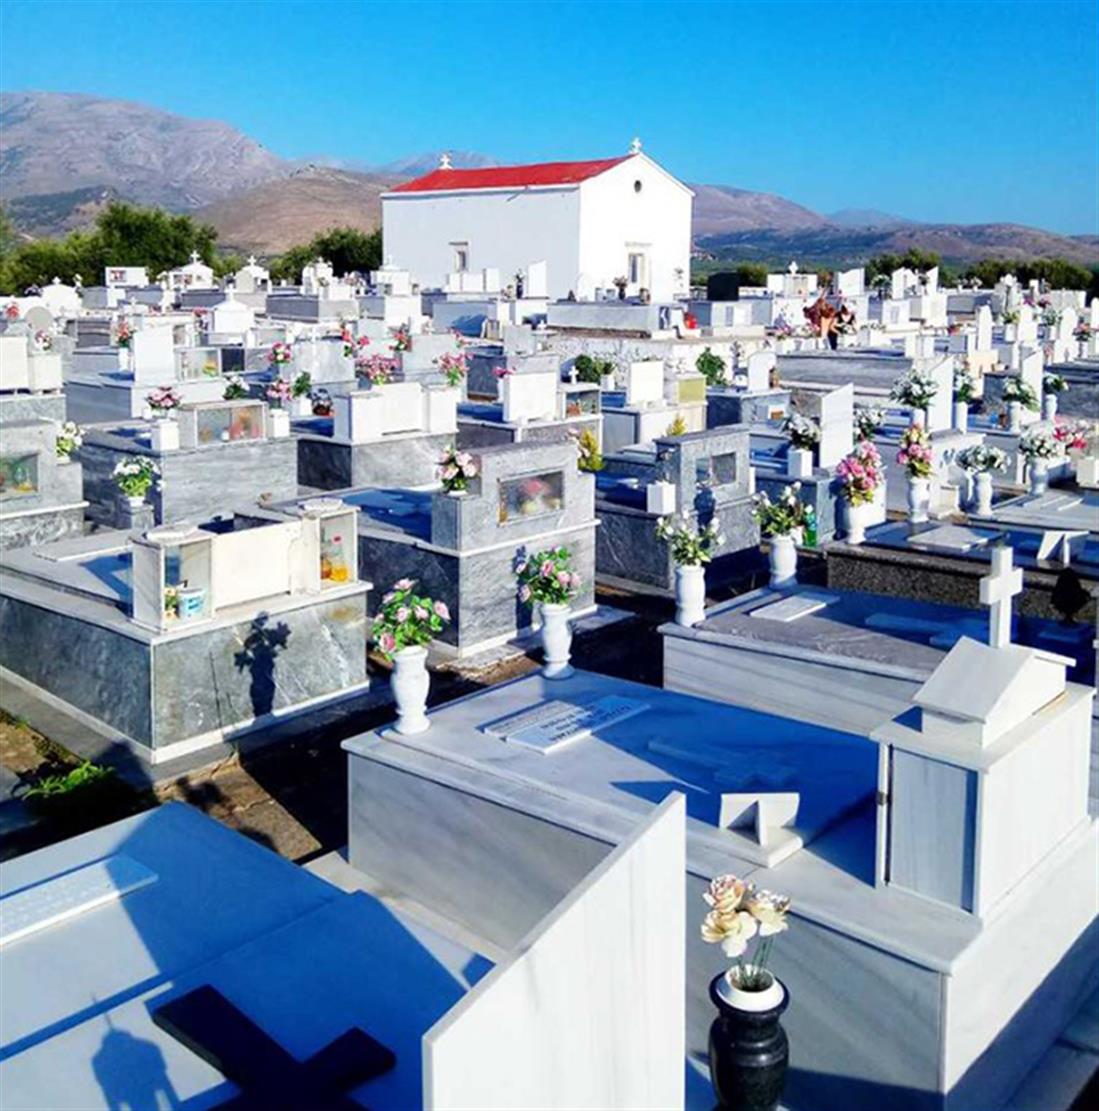 Κρήτη - Κοινοτικό Κοιμητήριο του Ευαγγελισμού - καντήλια - ληστεία